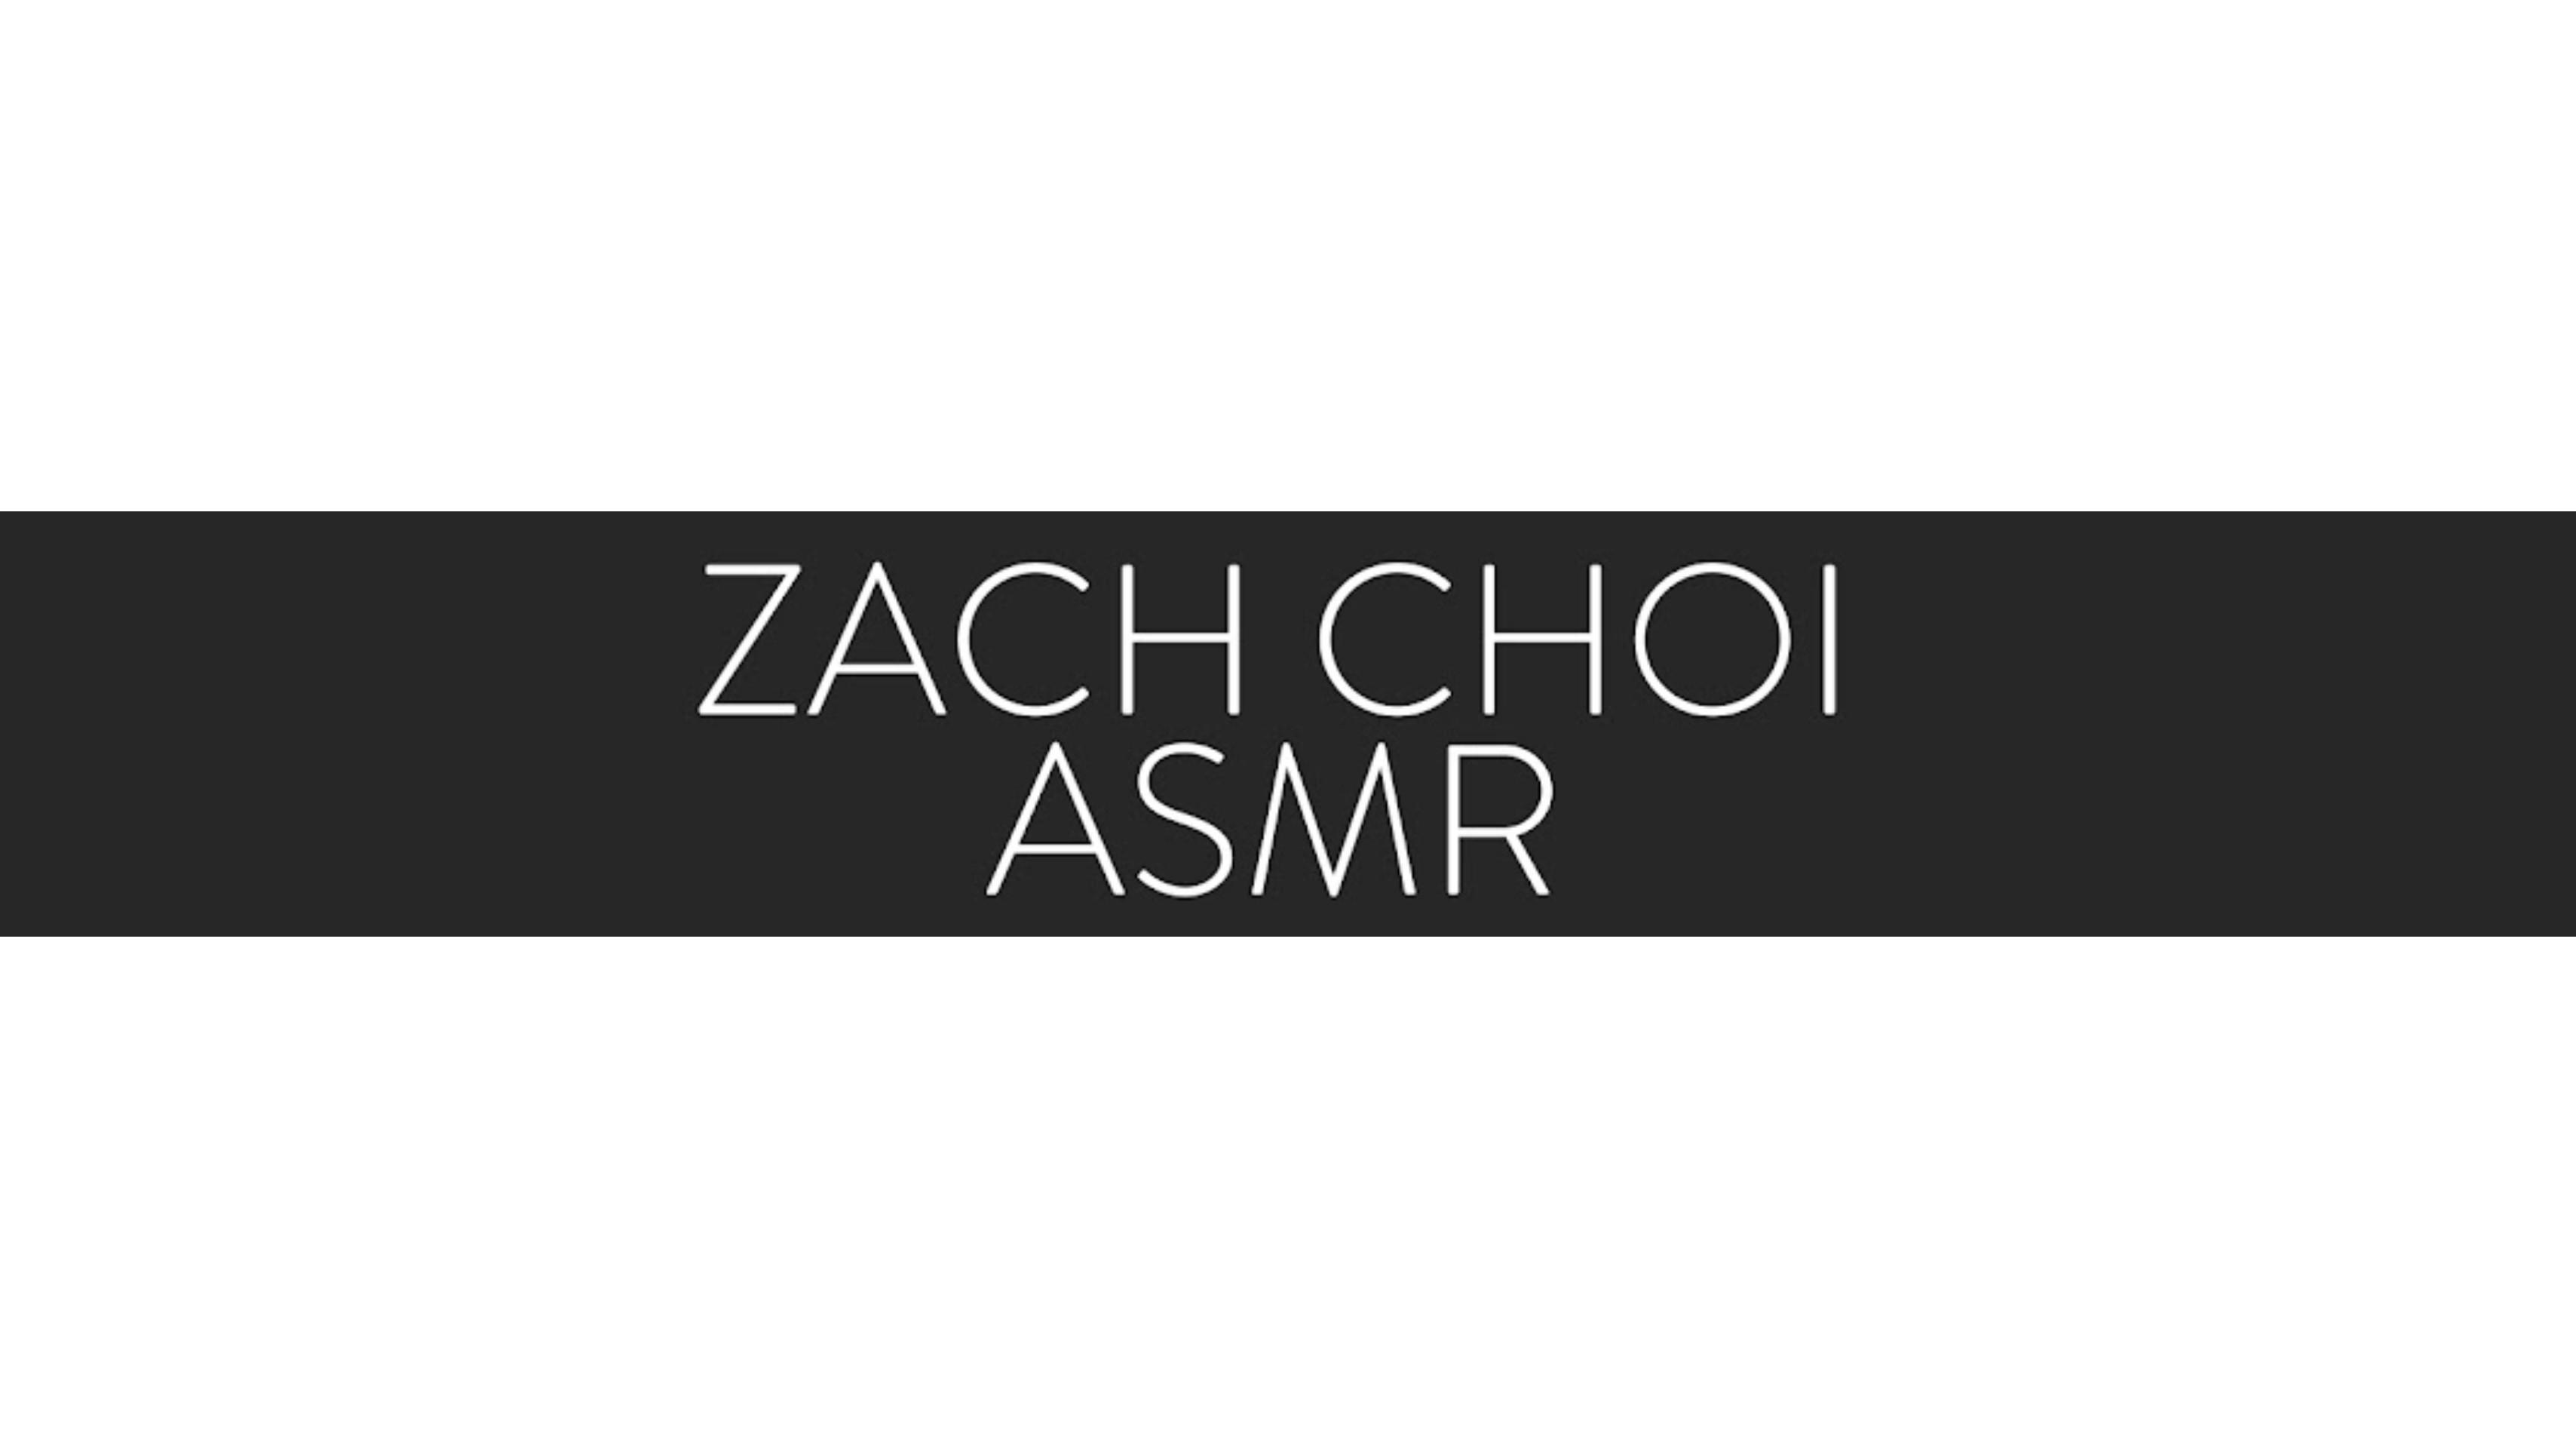 ZachChoi ASMR